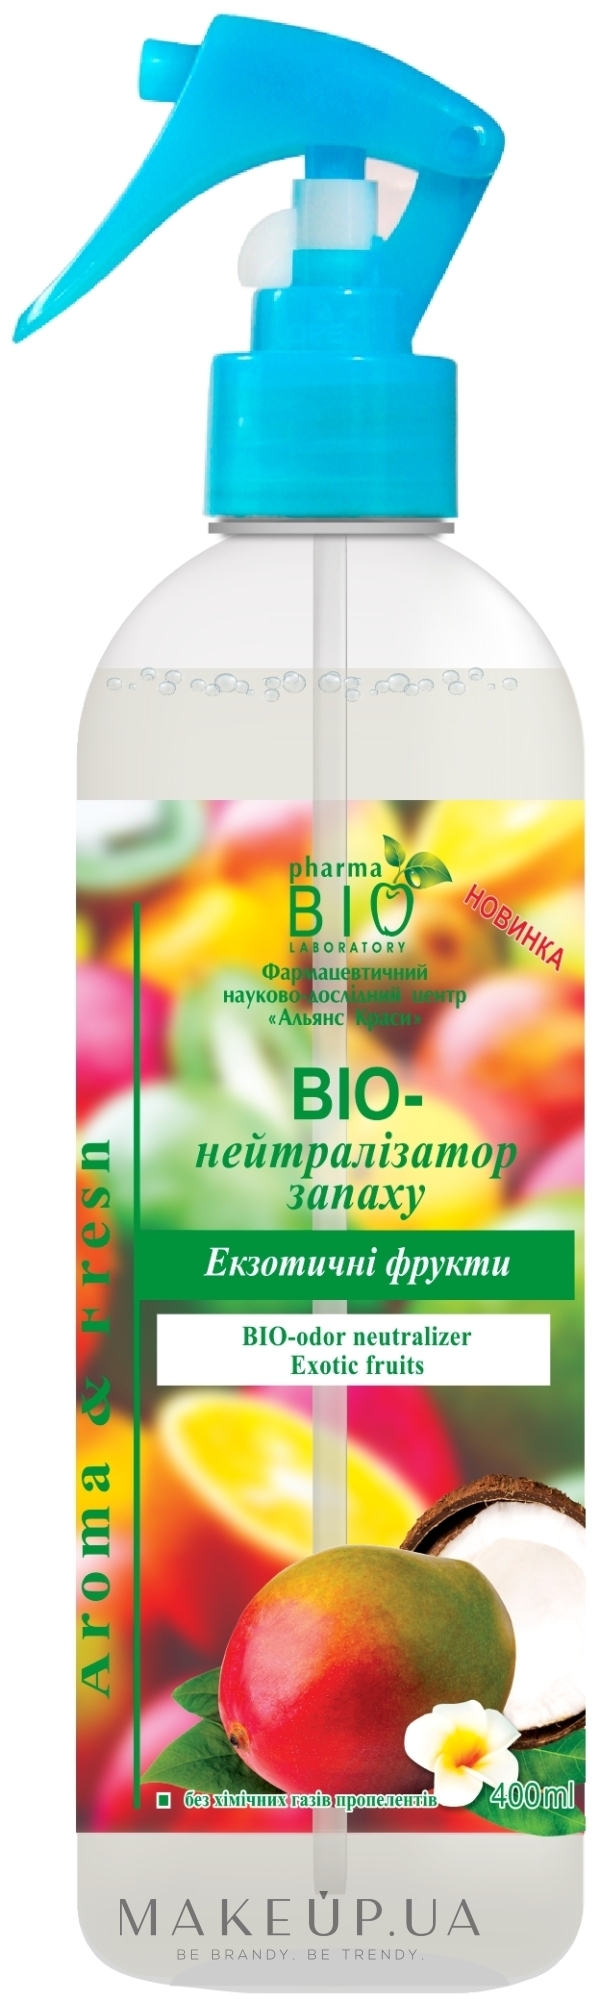 Освіжувач повітря "Біонейтралізатор запаху "Екзотичні фрукти" - Pharma Bio Laboratory — фото 400ml